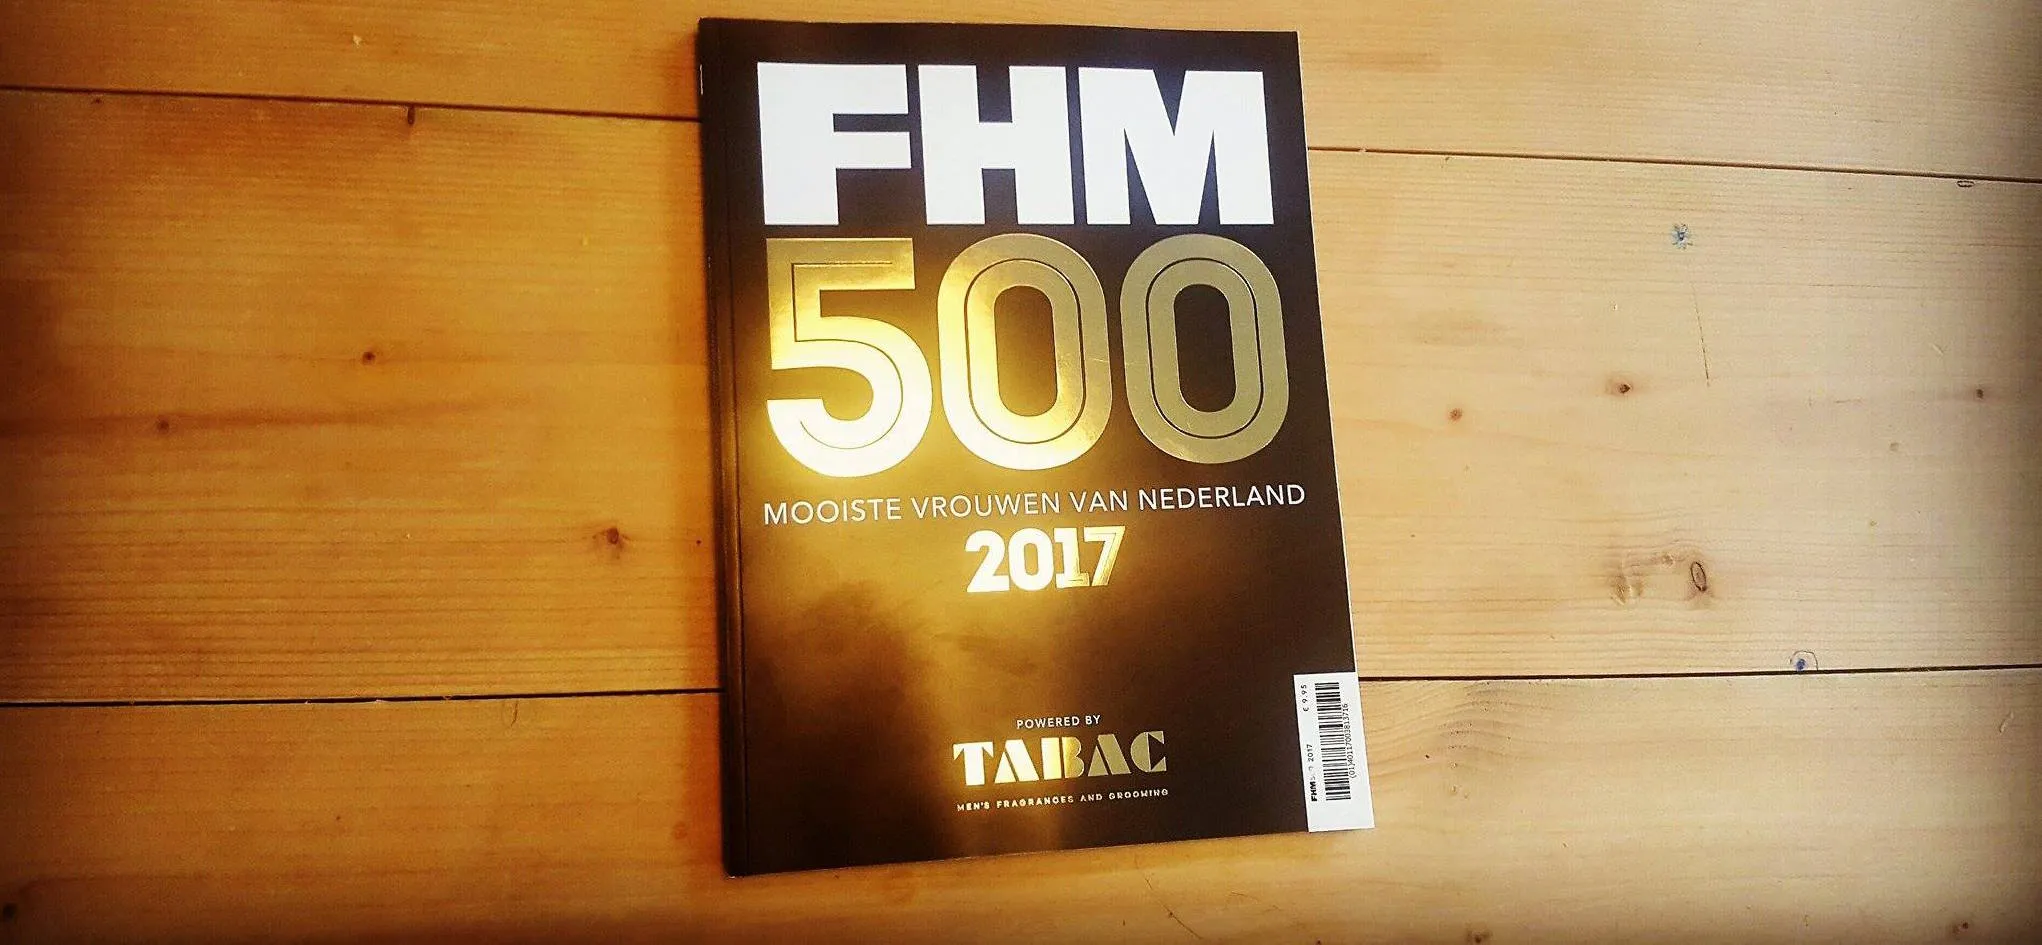 fhm500 magazine